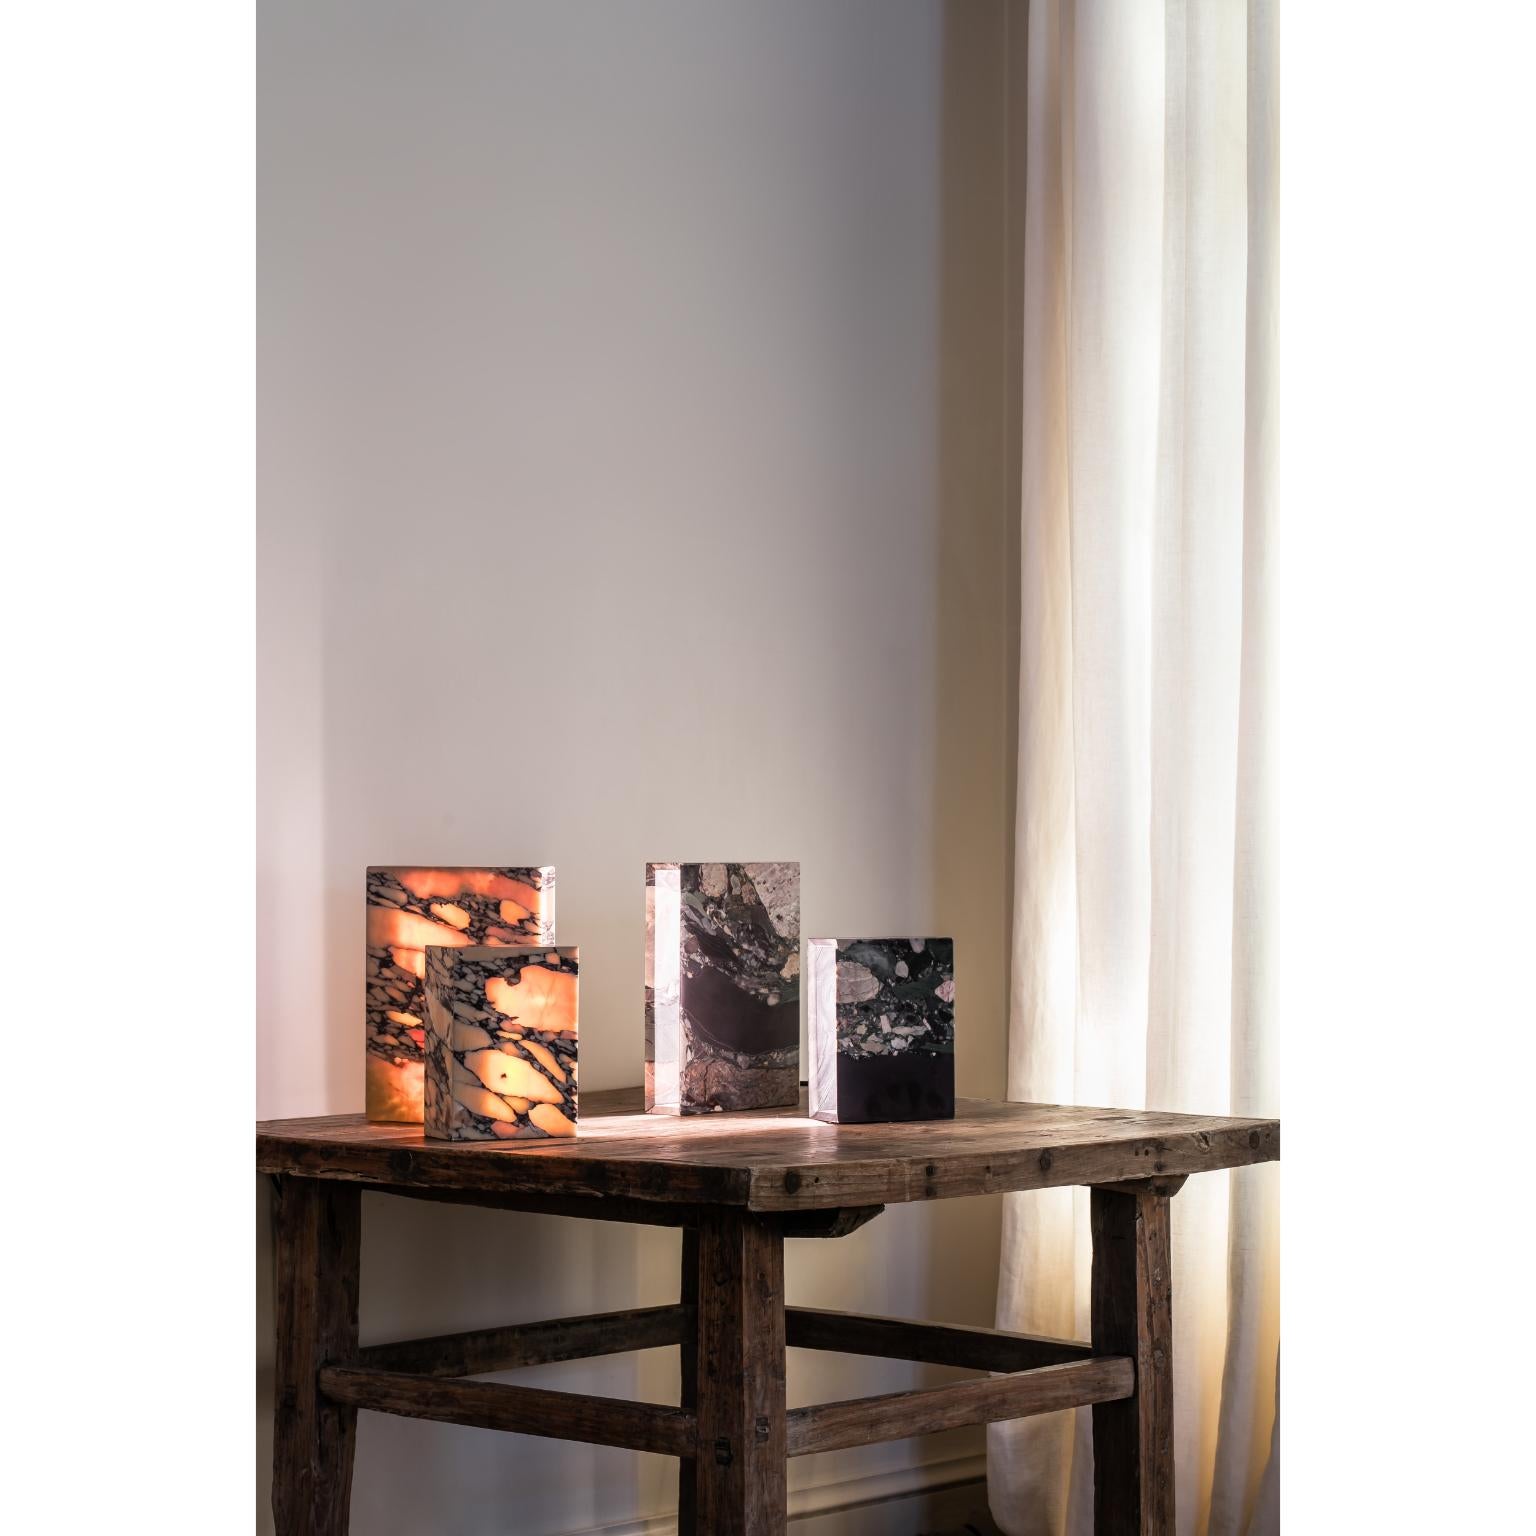 Clay Marble Books Lamp by Koen Van Guijze